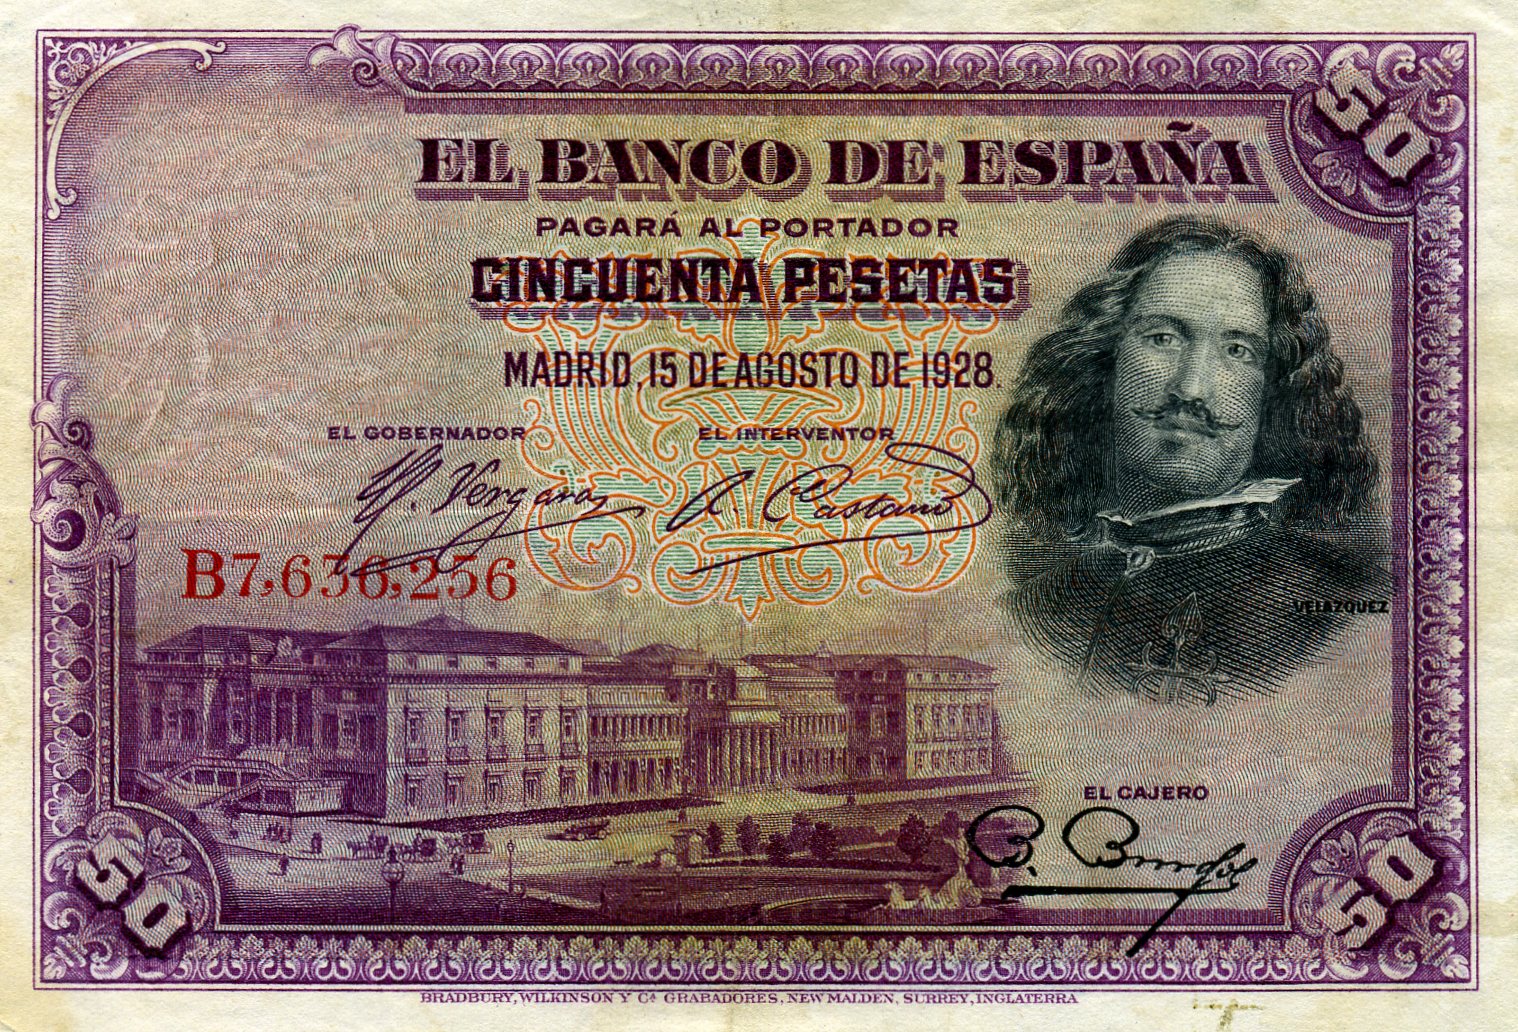 50 песо 1928 года. Диего Веласкес. Аверс. Реферат Рефератович.